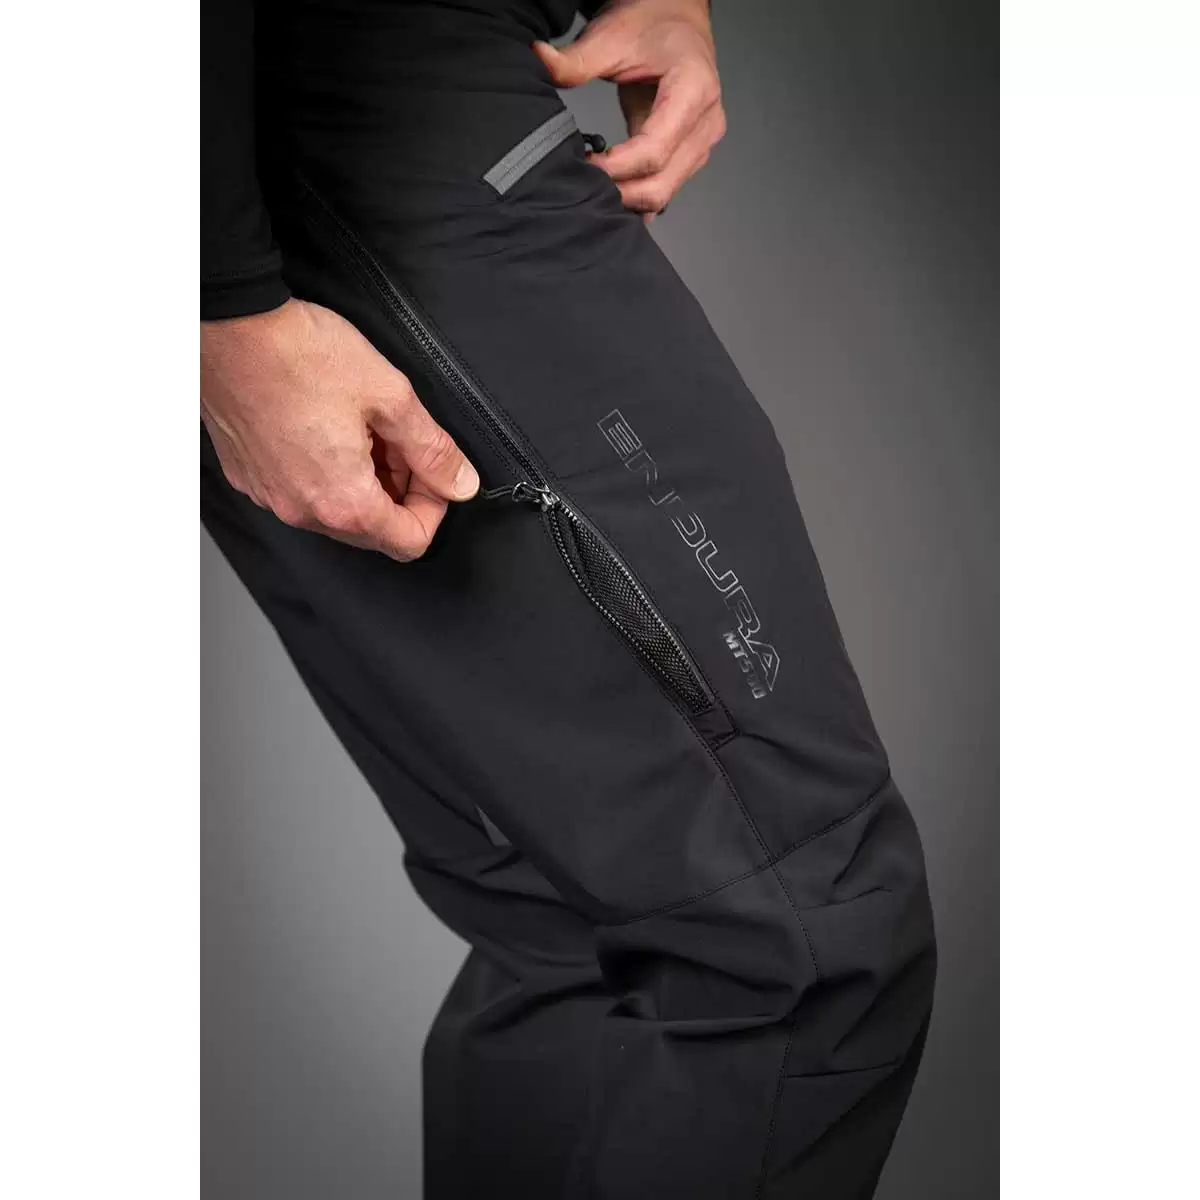 Pantalones MTB de invierno MT500 Freezing Point negro talla L #4